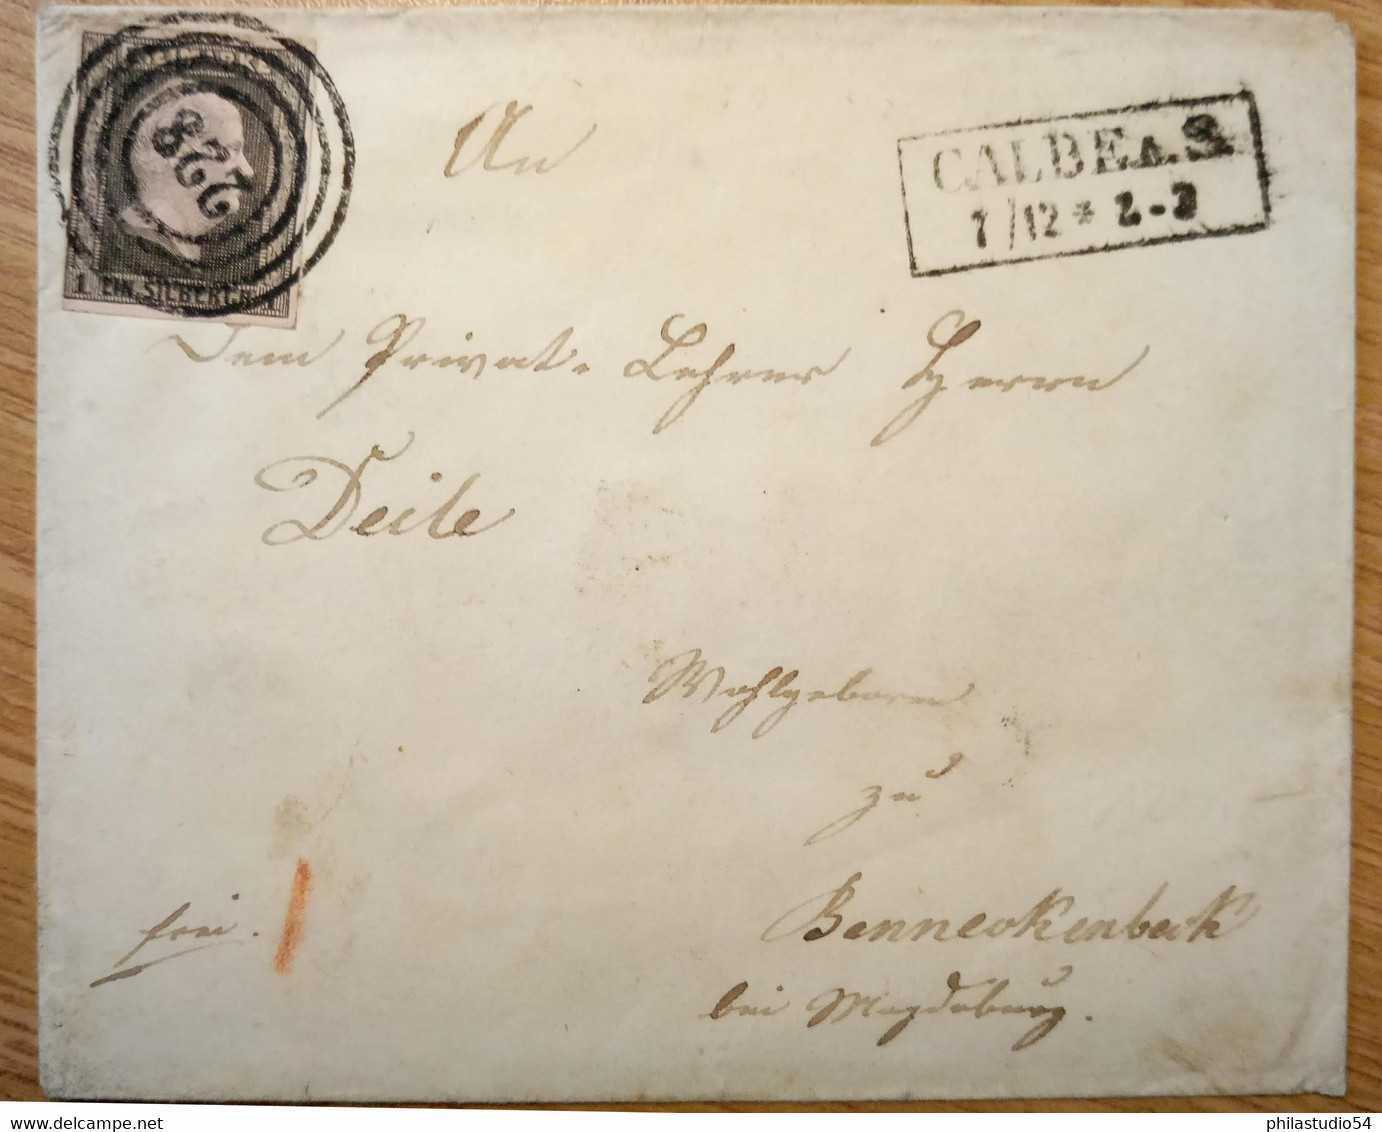 1851, Umschlag Mit 1 Sgr., Klarer Nummernstempel "228" Mit Ra2 "CALBE 1/12" - Storia Postale